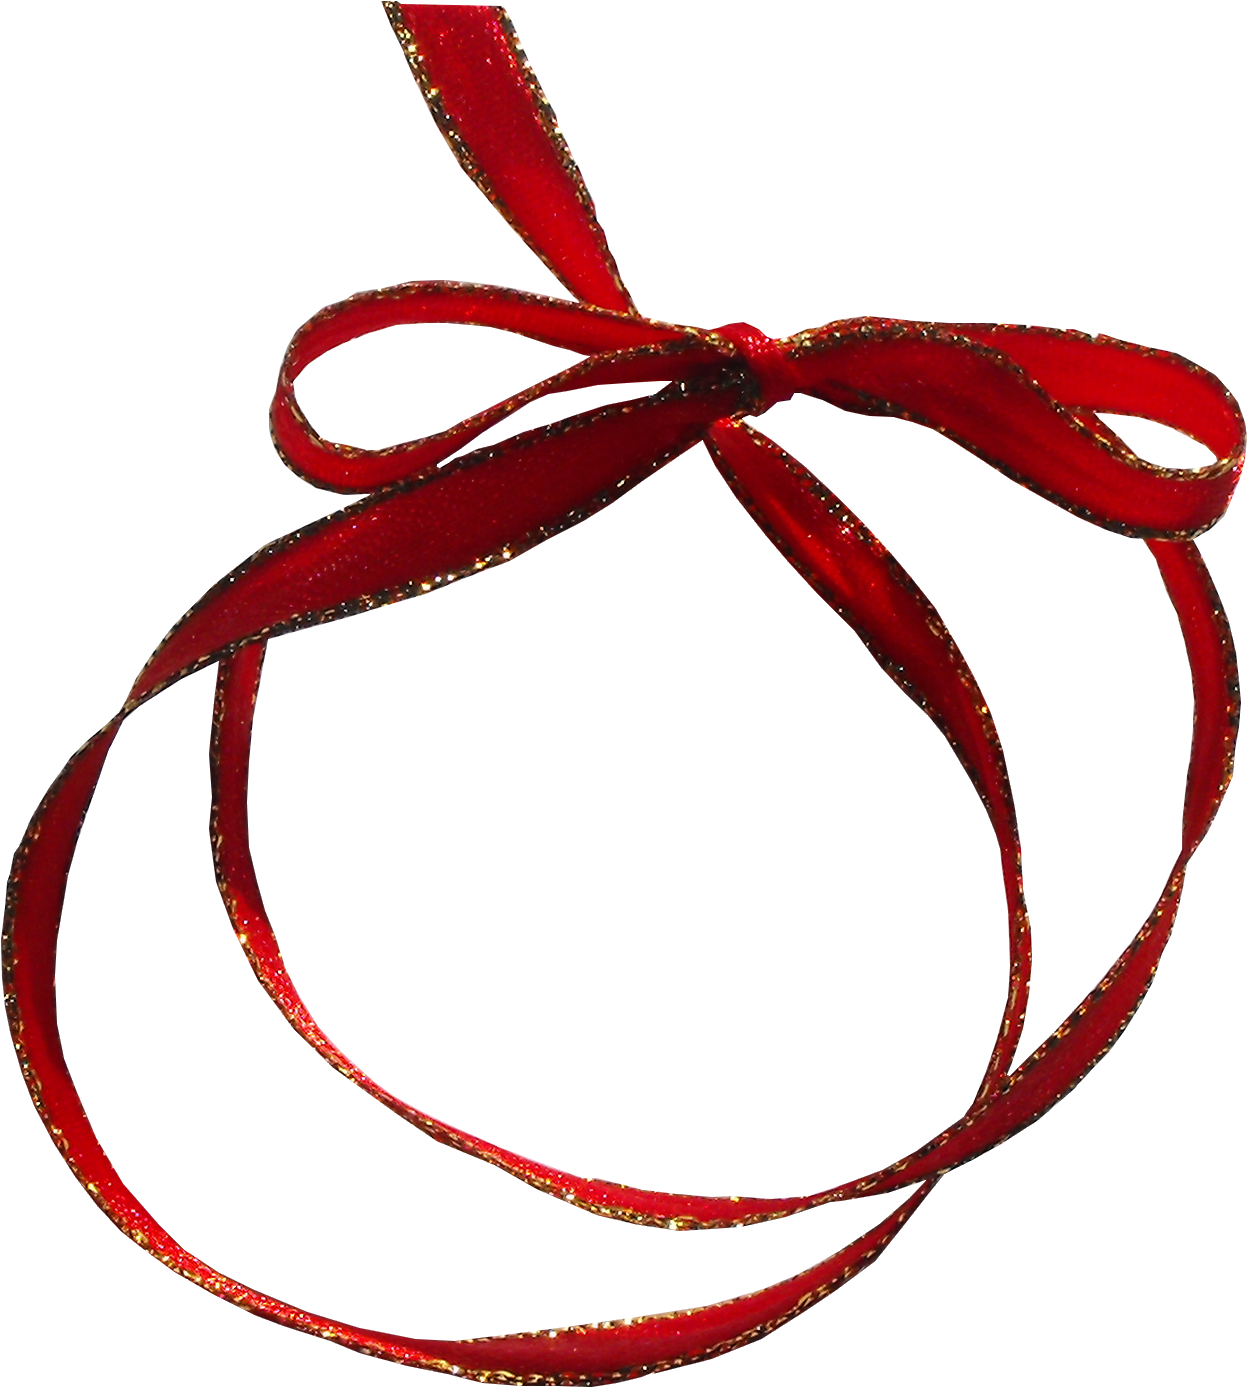 Bow Tie Shoelace Knot Clip Art - Bow Tie Shoelace Knot Clip Art (1800x1800)